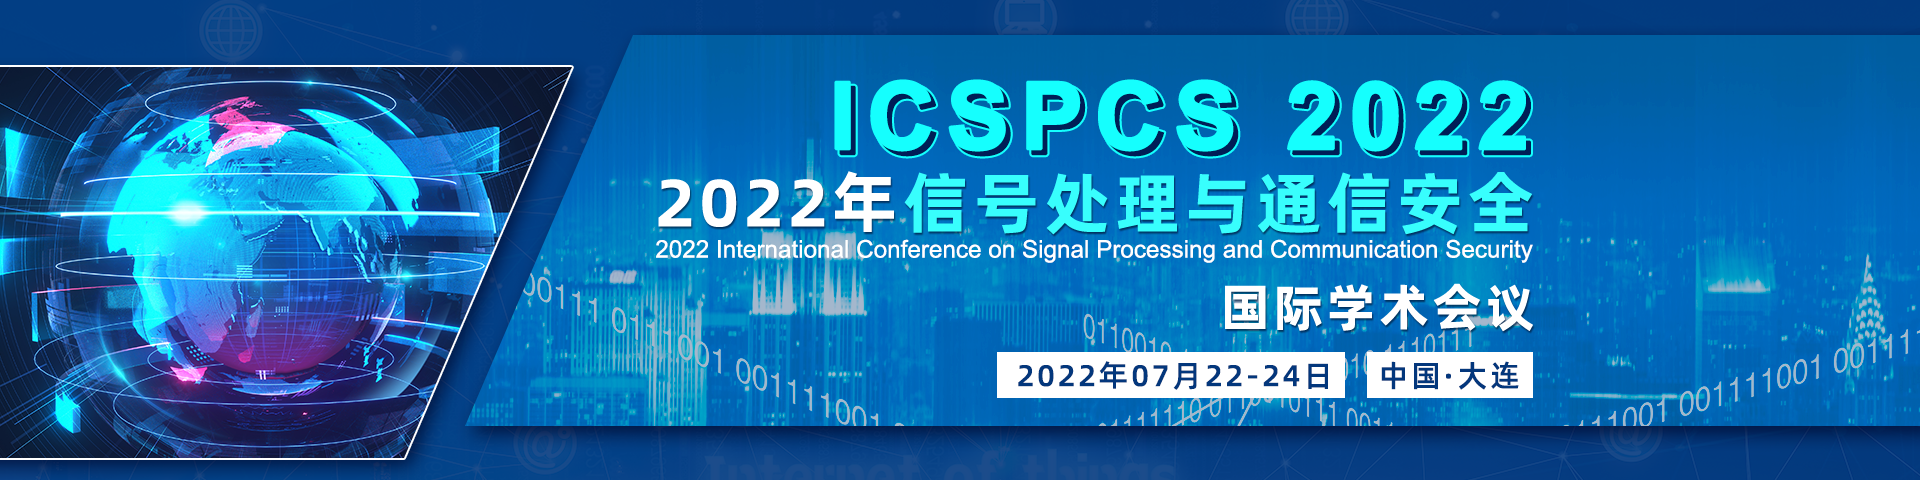 7月大连-ICSPCS 2022-banner-陈军-20220316.png